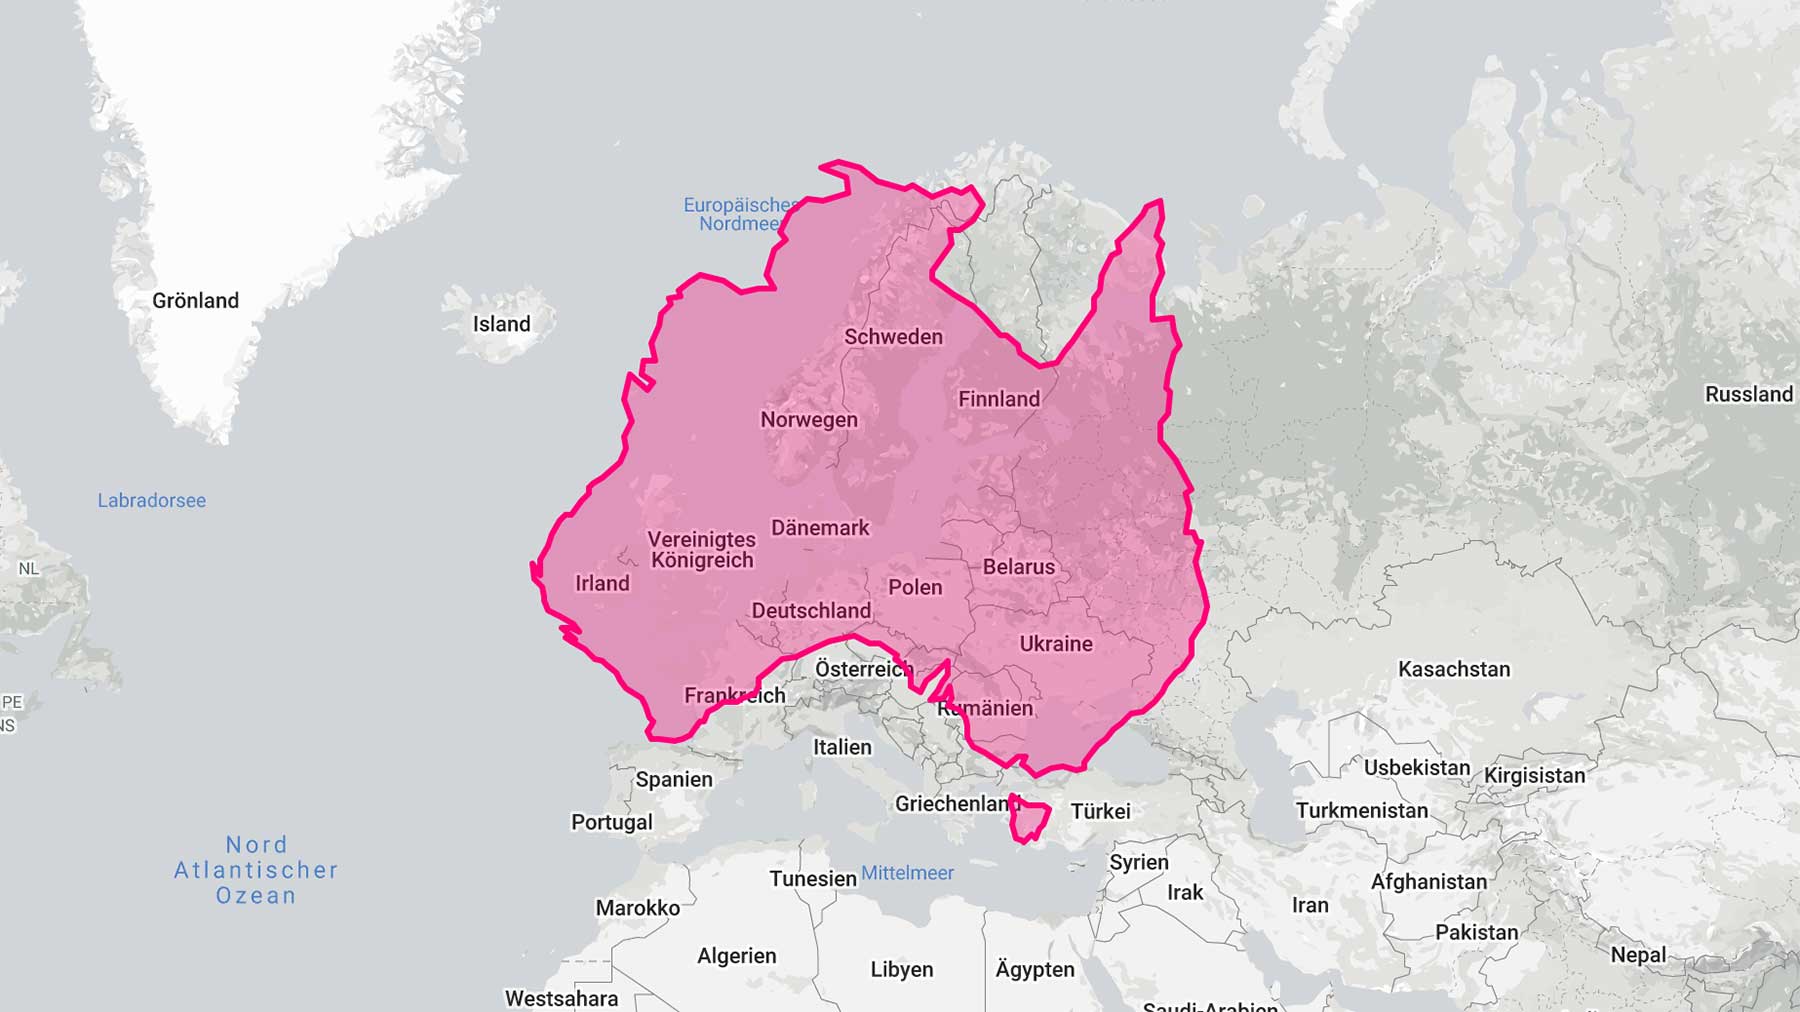 Interaktive Karte zeigt echte Größe von Ländern im direkten Vergleich die-echte-groesse-von-laendern-im-vergleich 